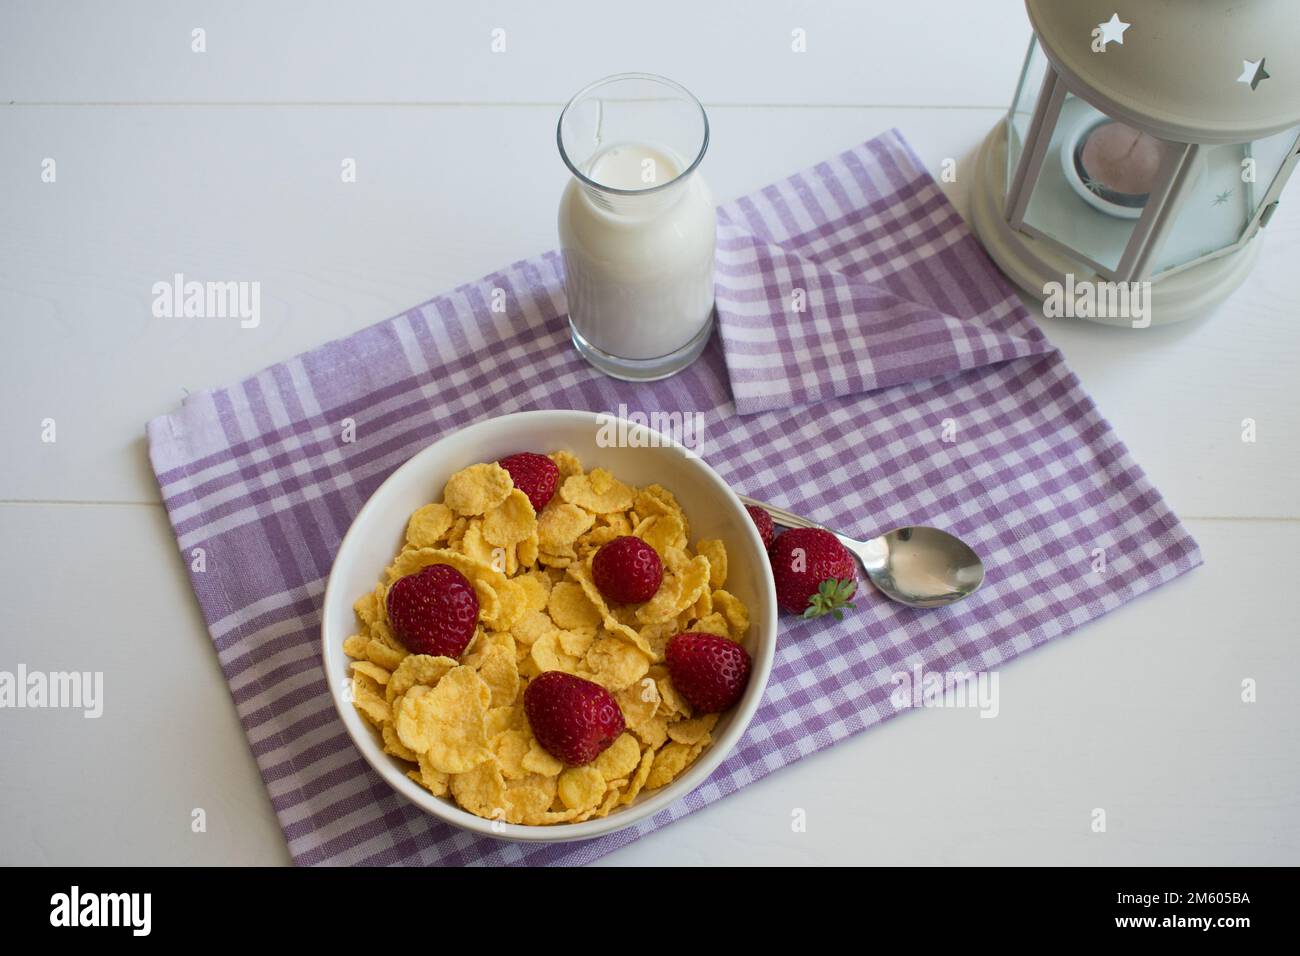 Céréales pour le petit déjeuner sain, présentation sur la table avec de délicieuses céréales, fraises, lait, vue de dessus. Banque D'Images